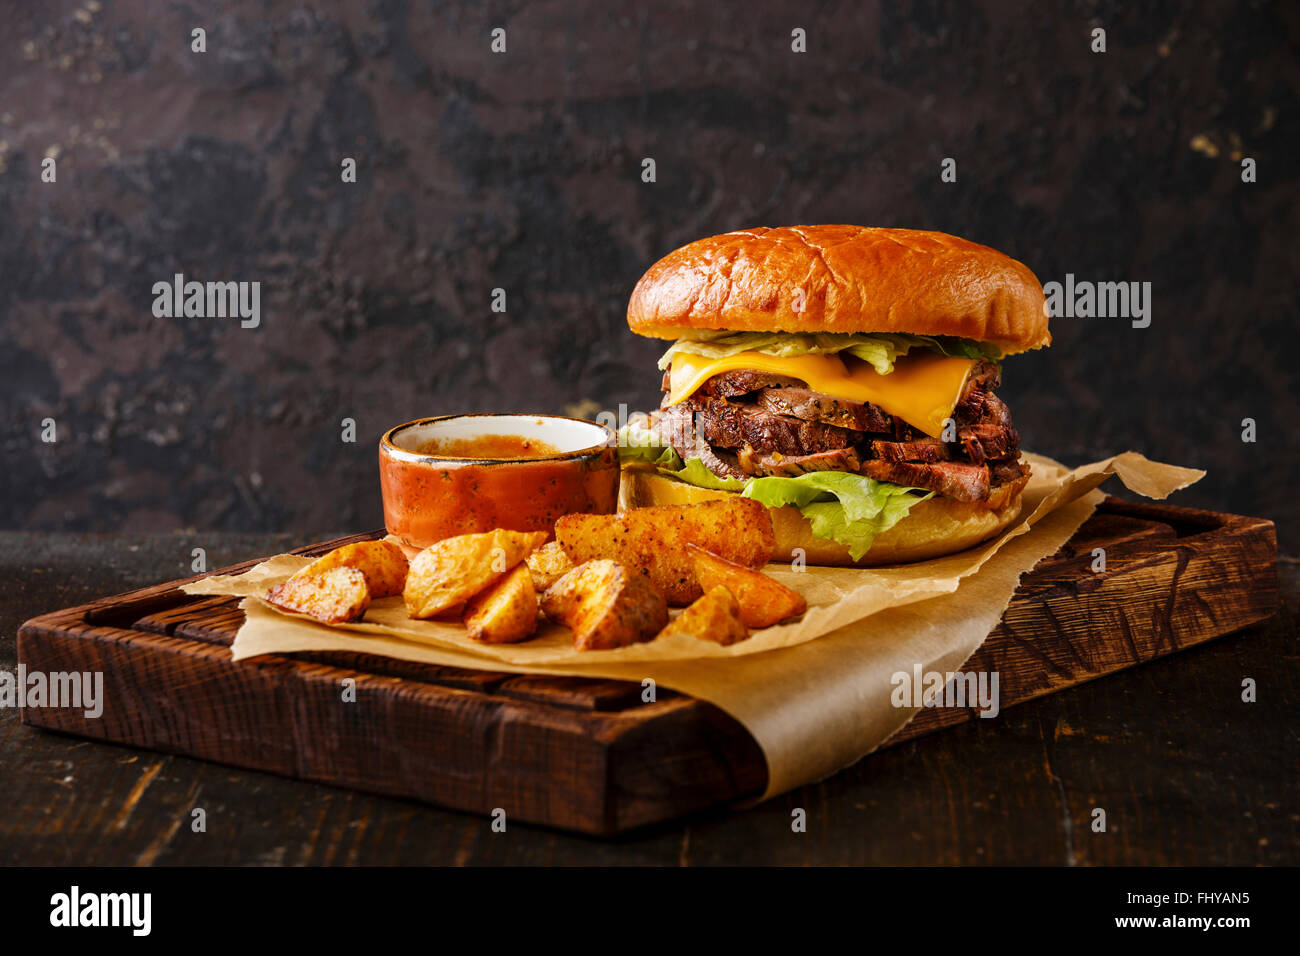 Pastrami-Burger-Imbiss-Snack mit in Scheiben geschnittenen Braten Rindfleisch und Kartoffel Wedges auf dunklem Hintergrund Stockfoto